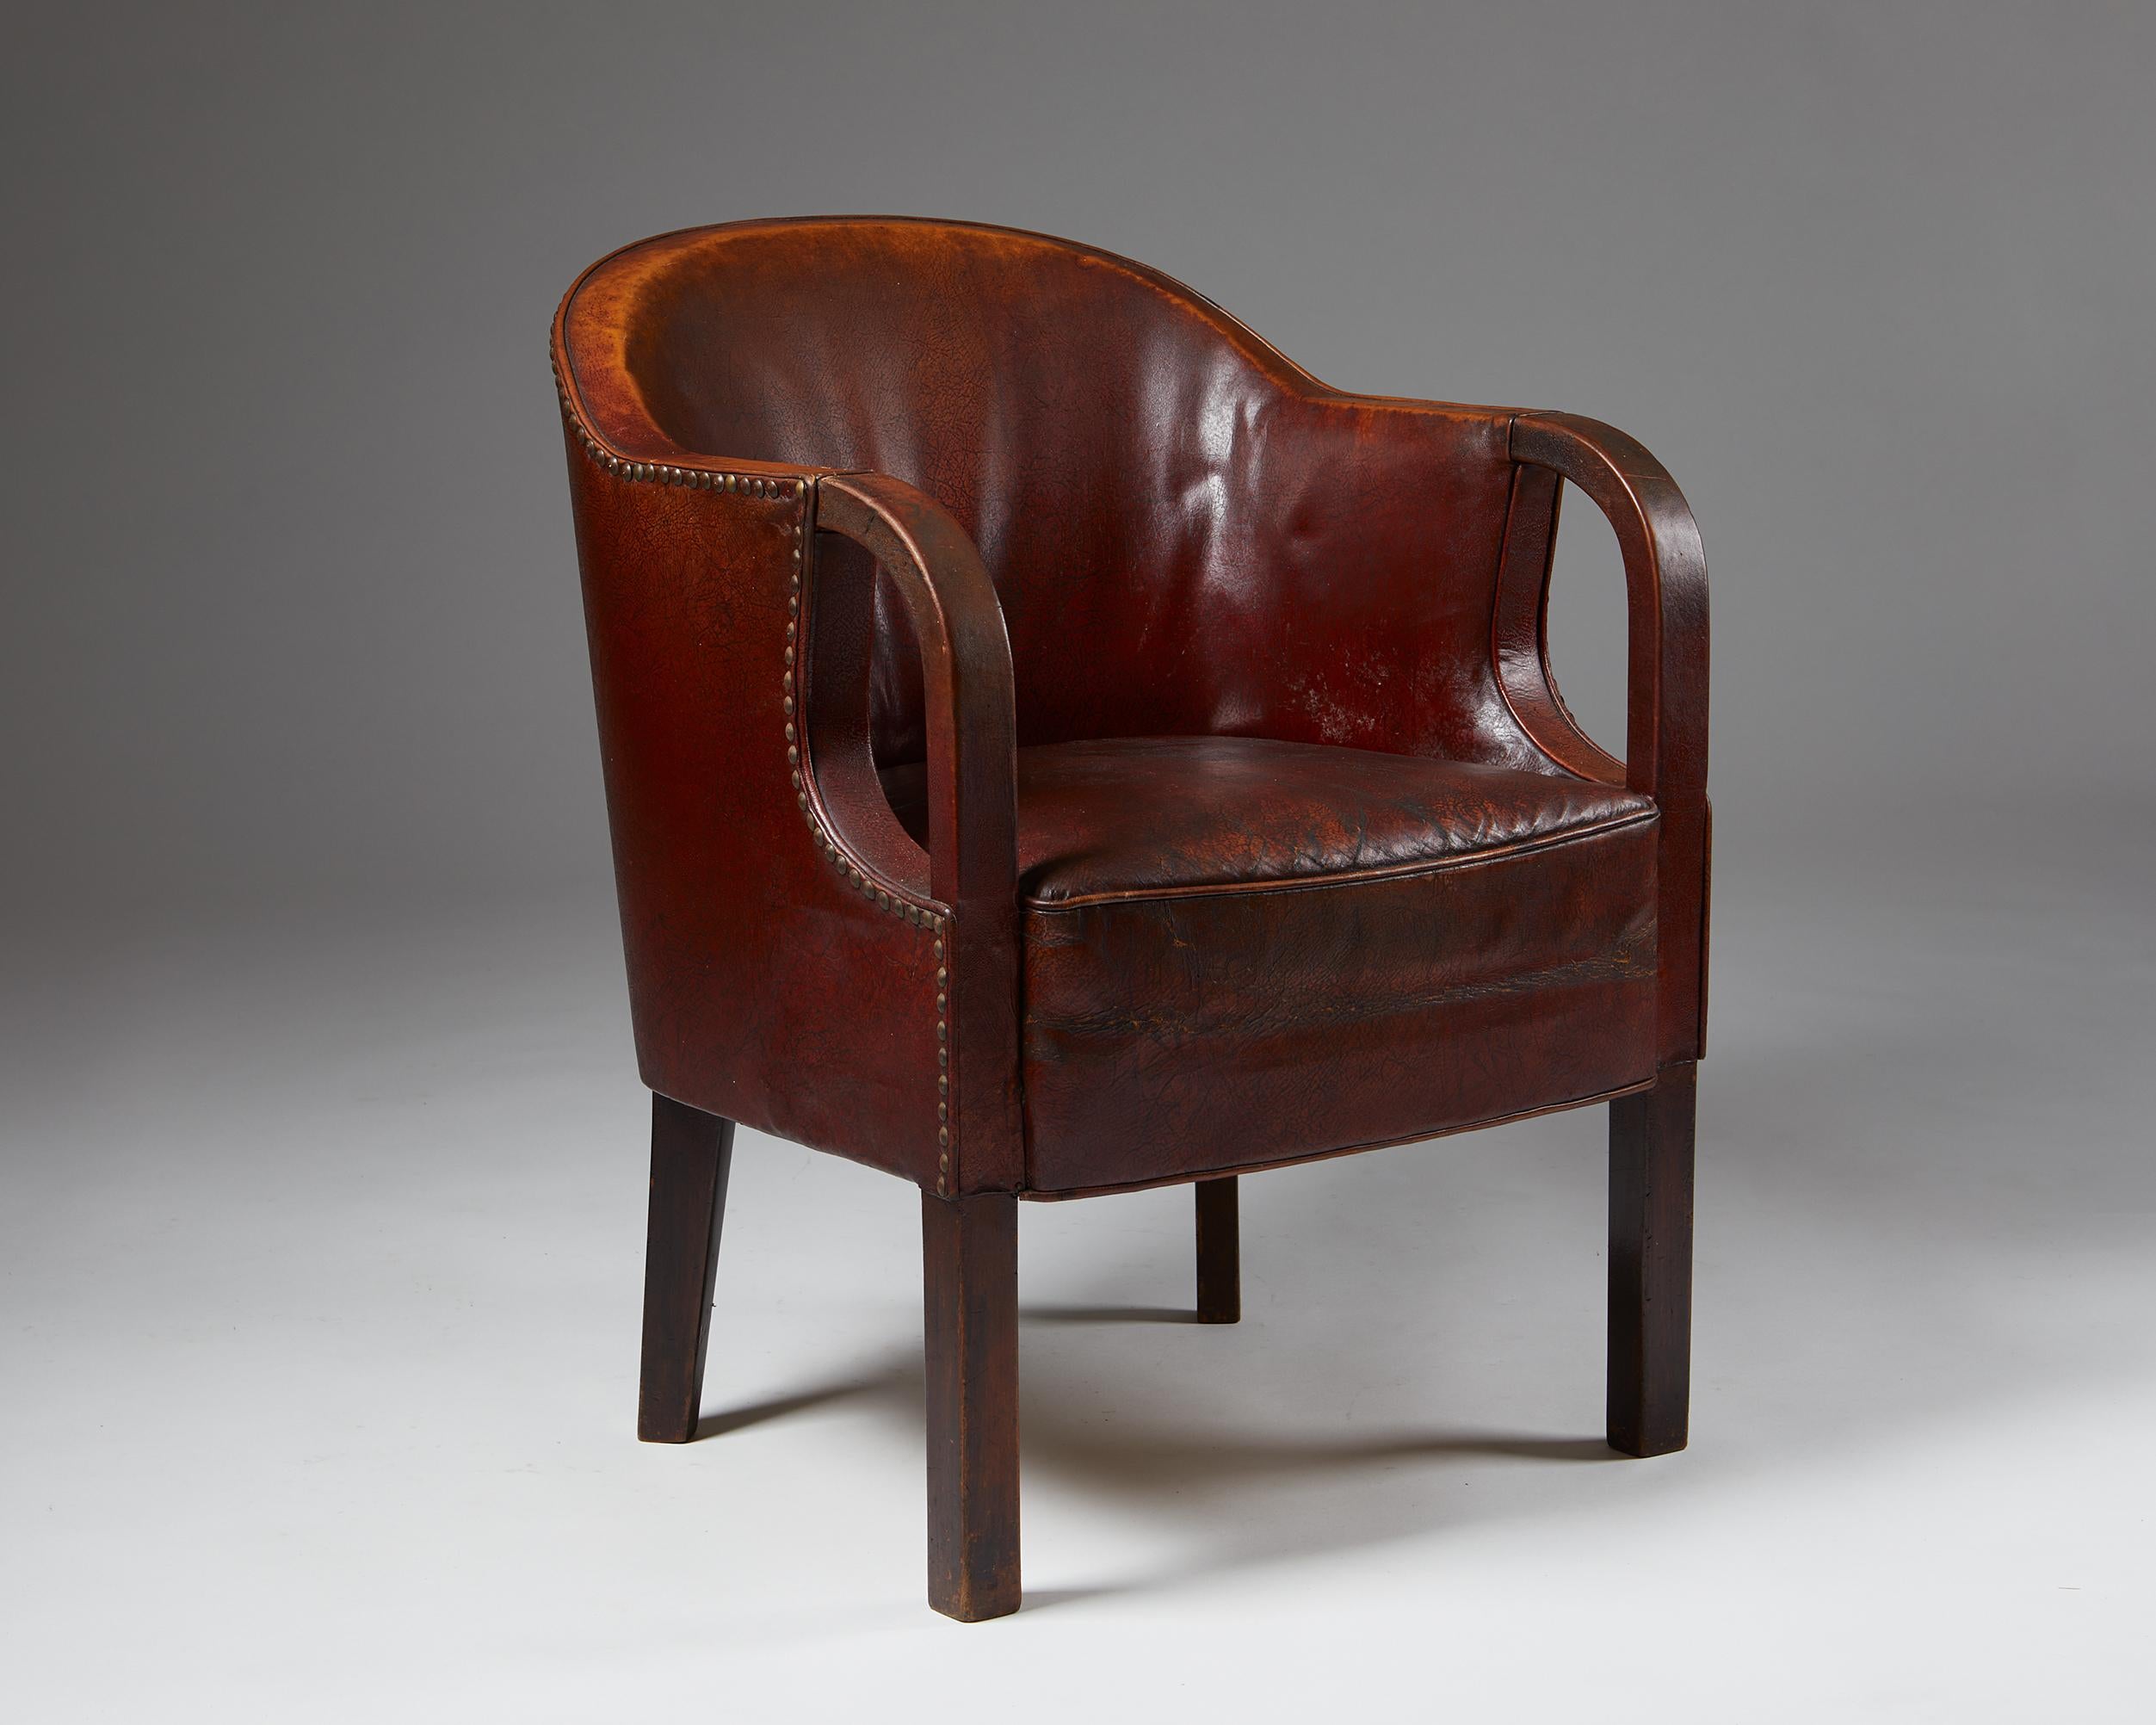 Chaise longue, conçue par Kay Fisker,
Danemark, années 1930.

Cadre en acajou et cuir marron.

Mesures :
H : 83 cm
SH : 47 cm
L : 52 cm
D : 58 cm